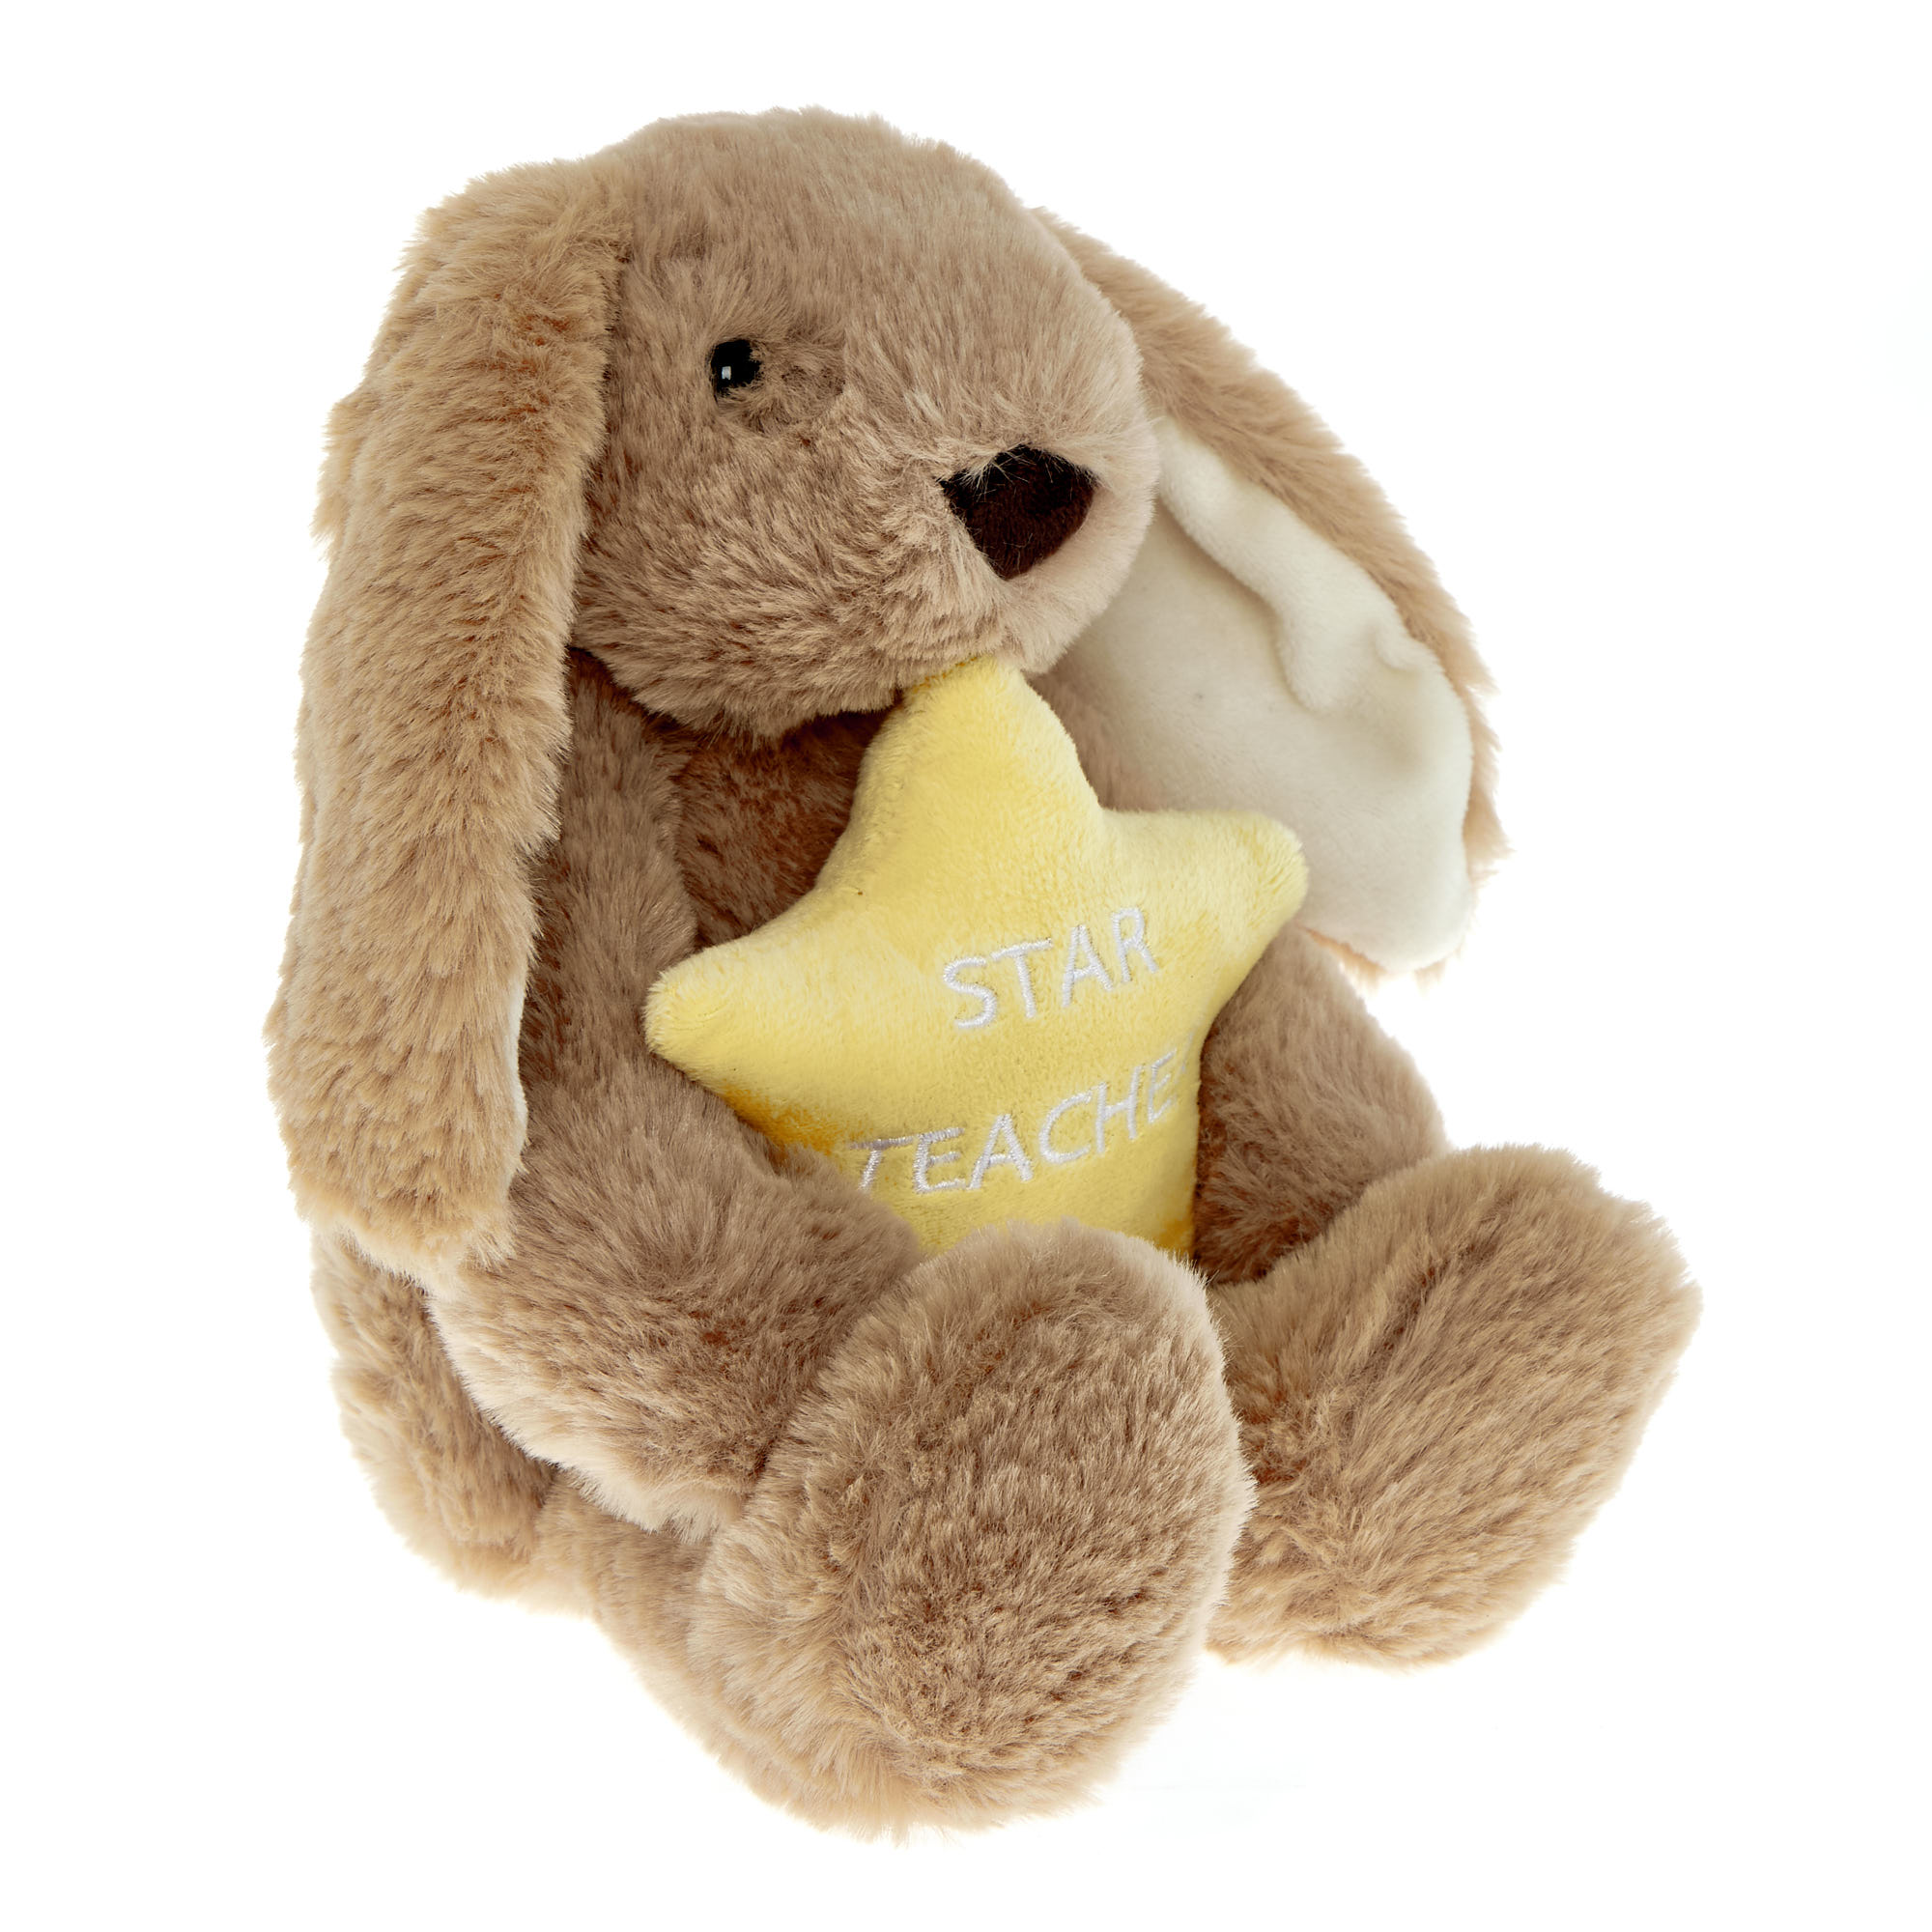 Small Star Teacher Bunny Soft Toy